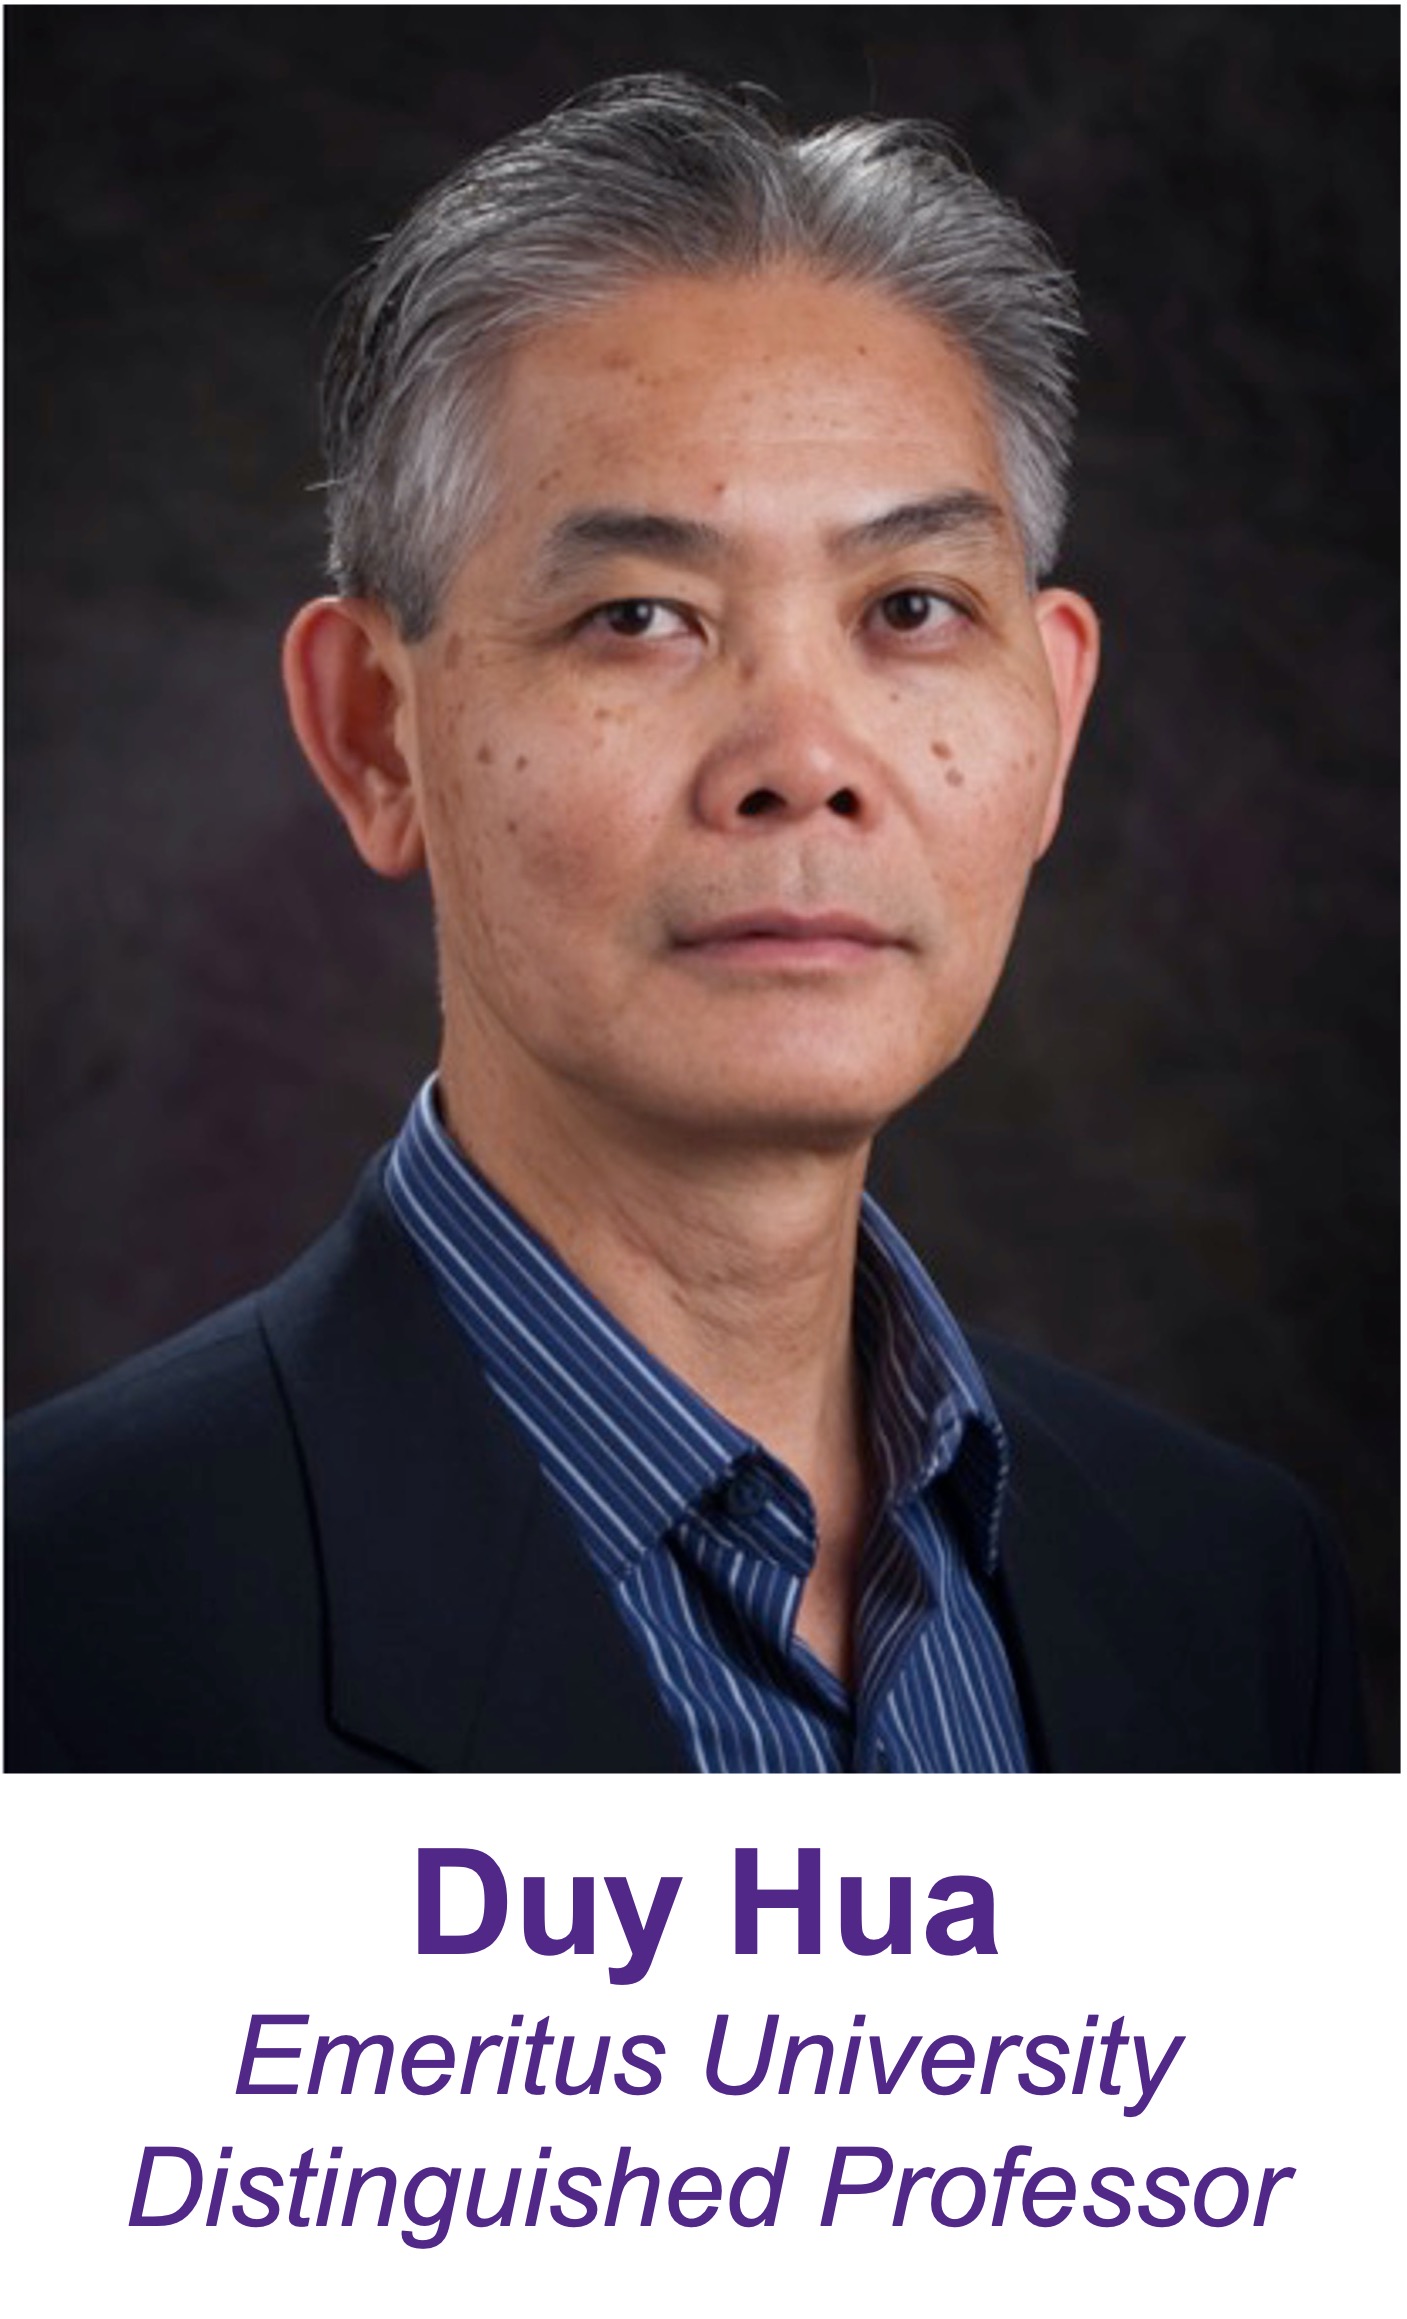 Professor Duy Hua